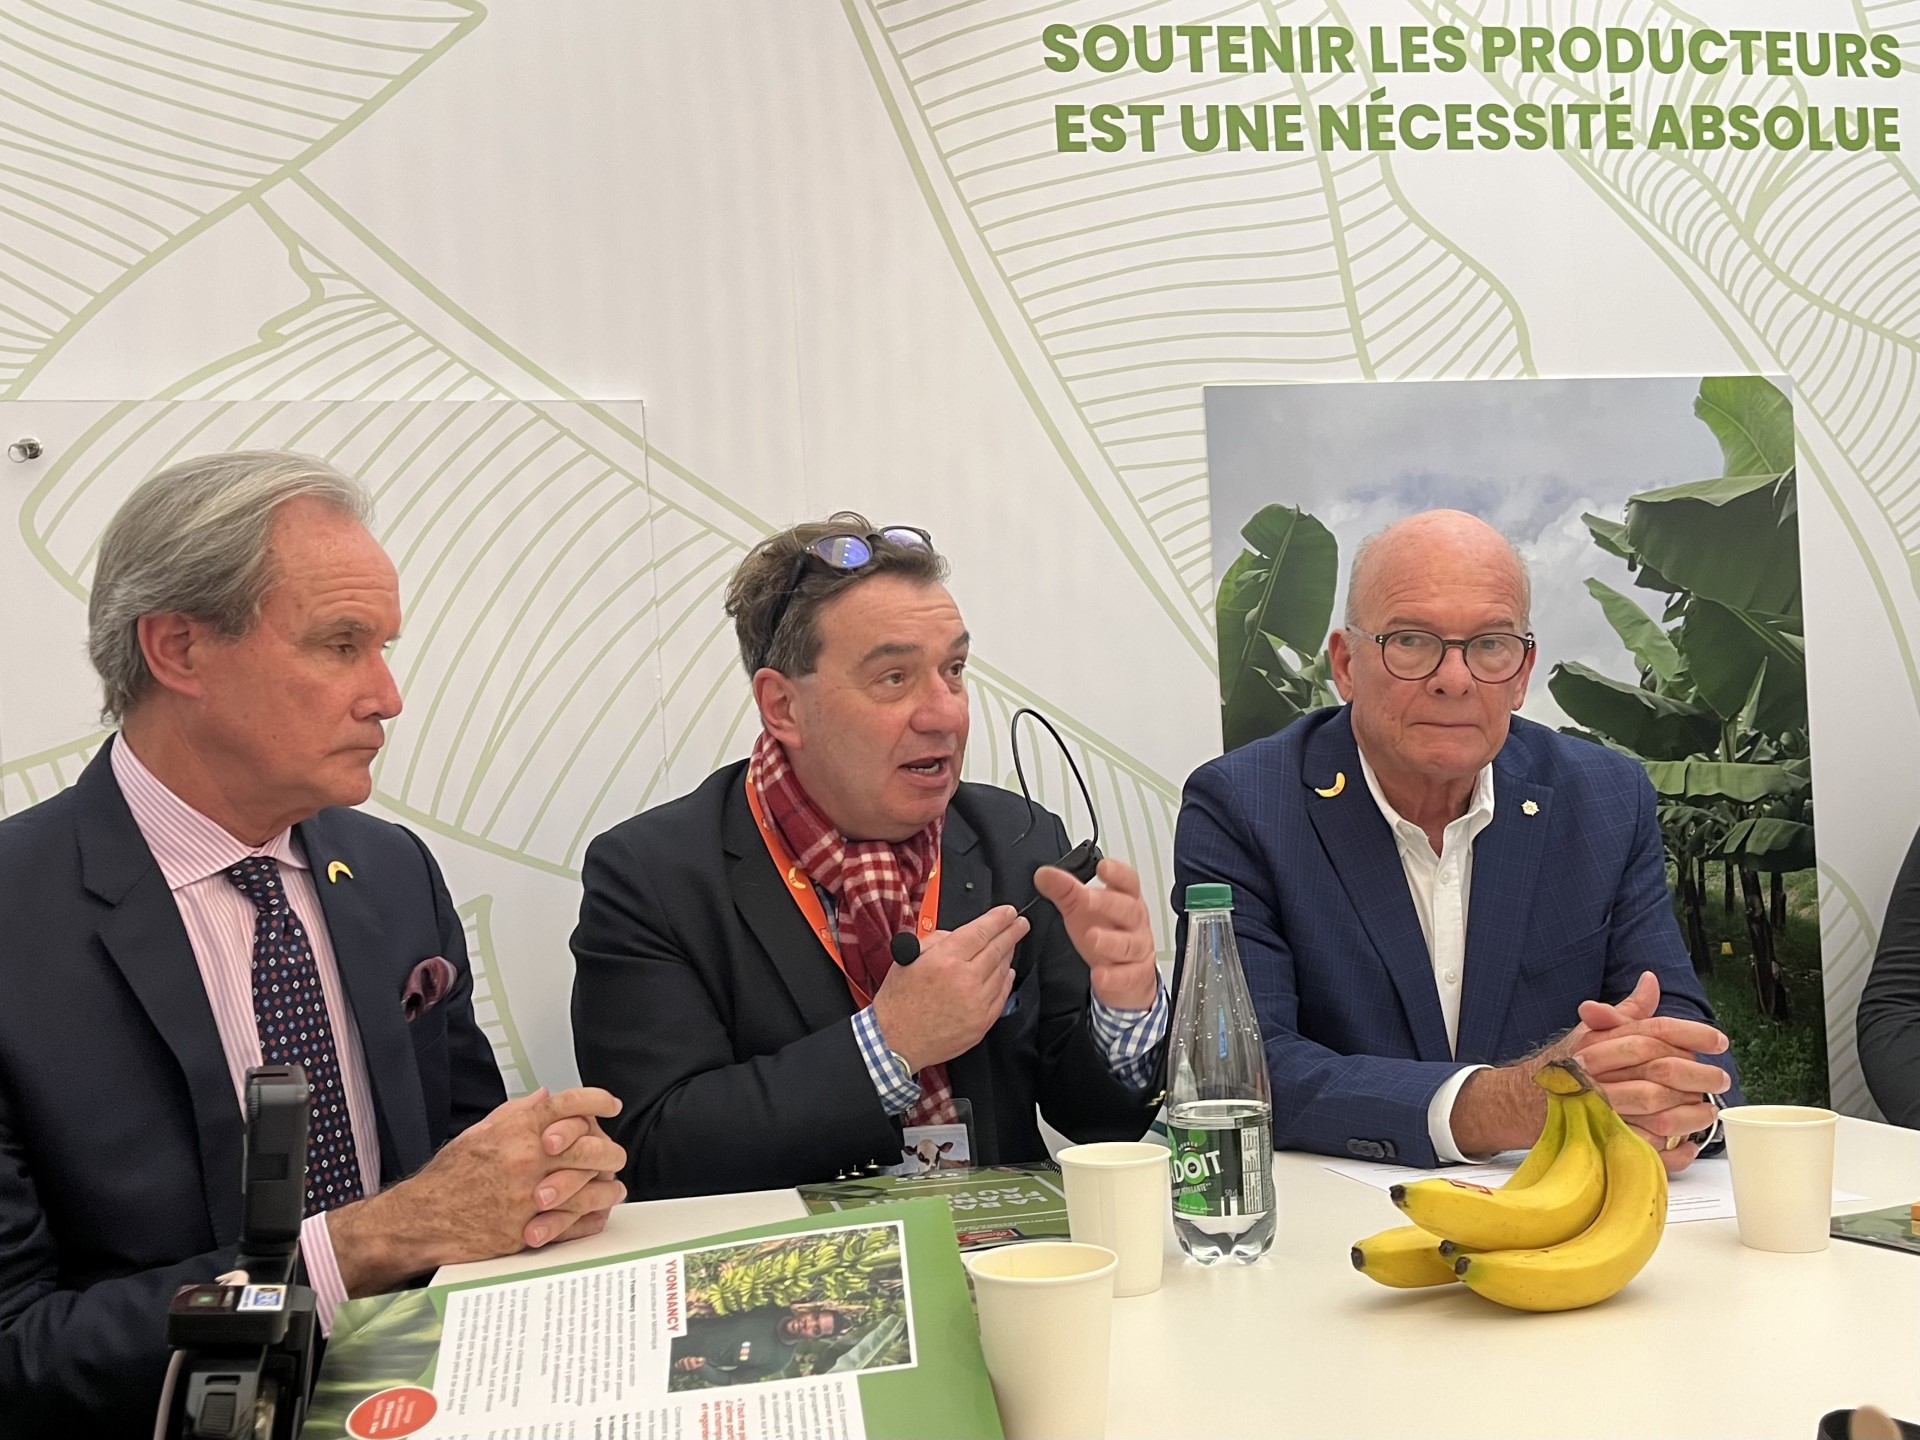     À Paris, la banane veut négocier des aides pour préparer l'avenir

